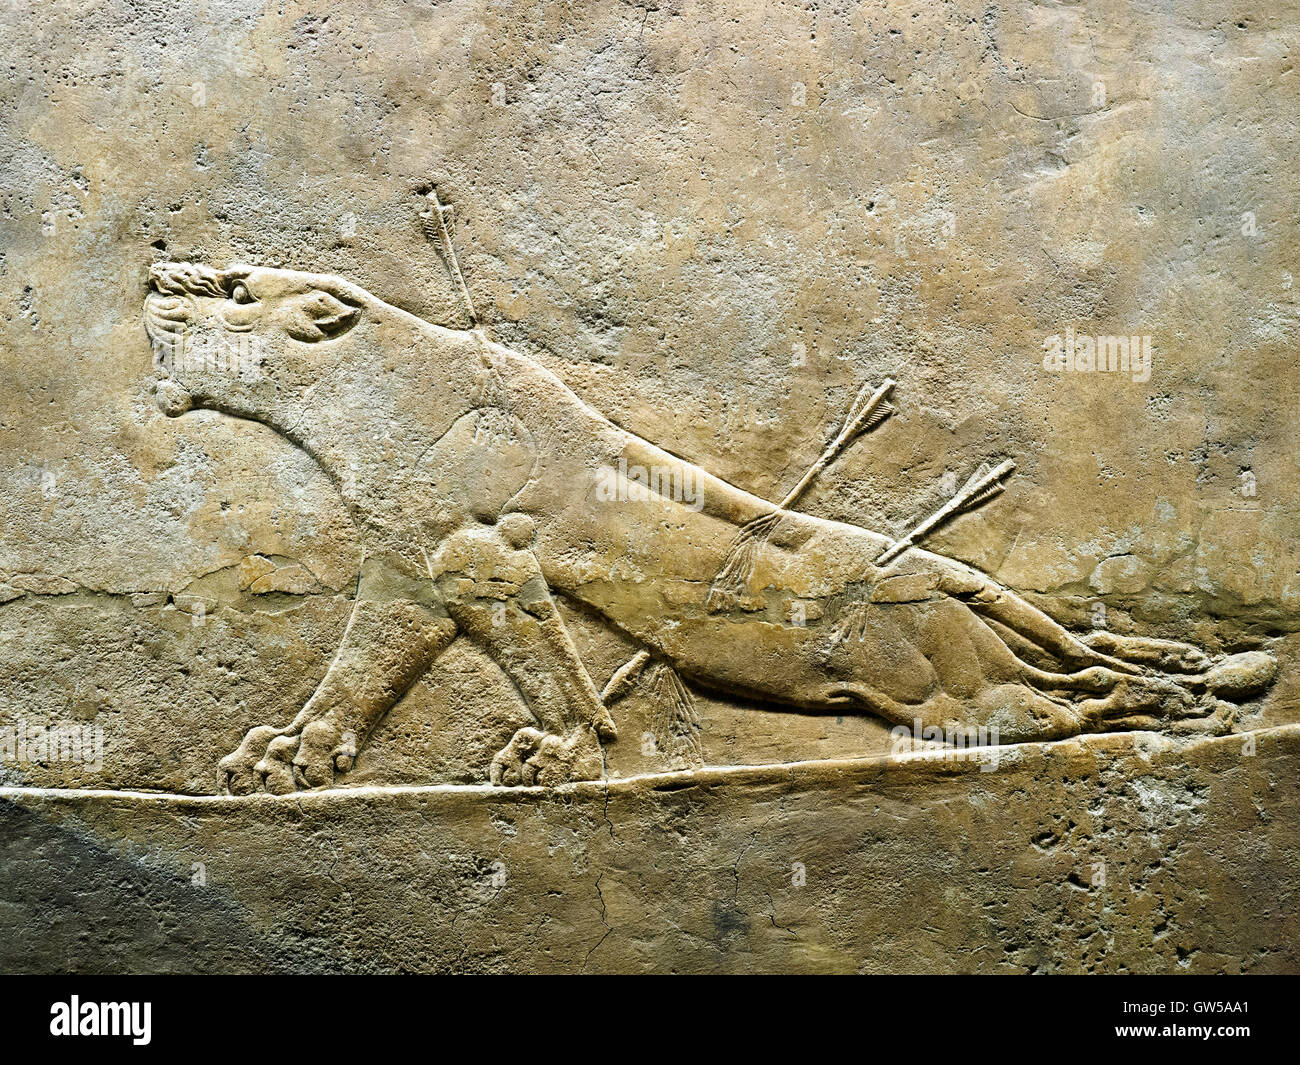 La chasse au lion royal assyrien, environ 645-635 BC de Ninive, Palais du British Museum - Londres, Angleterre Banque D'Images